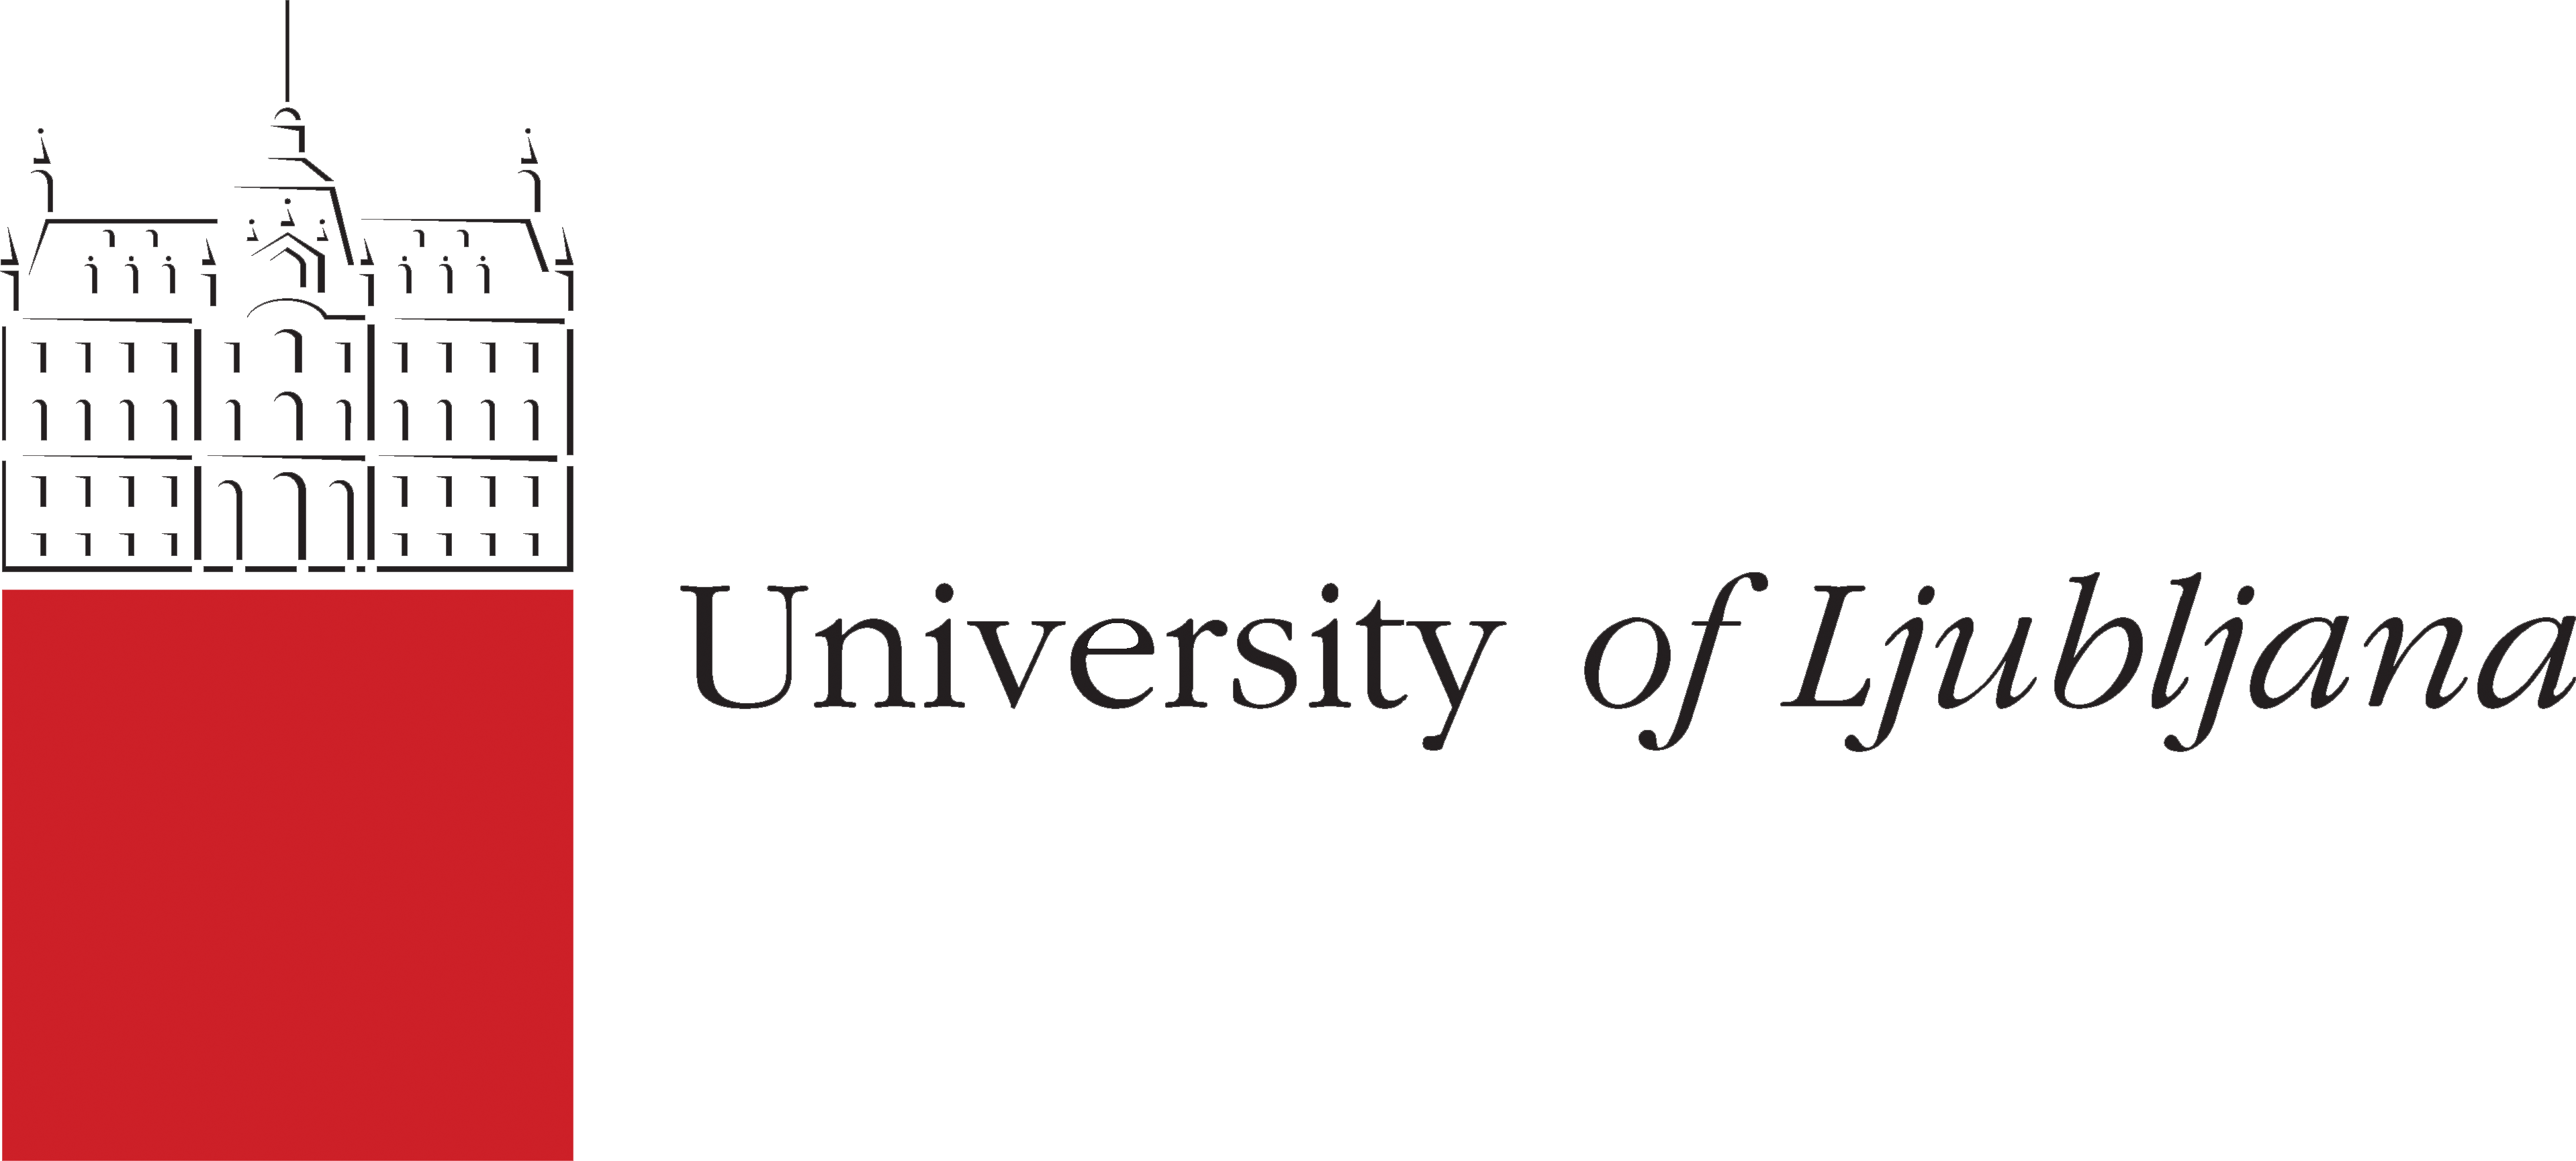 University of ljubljana logo